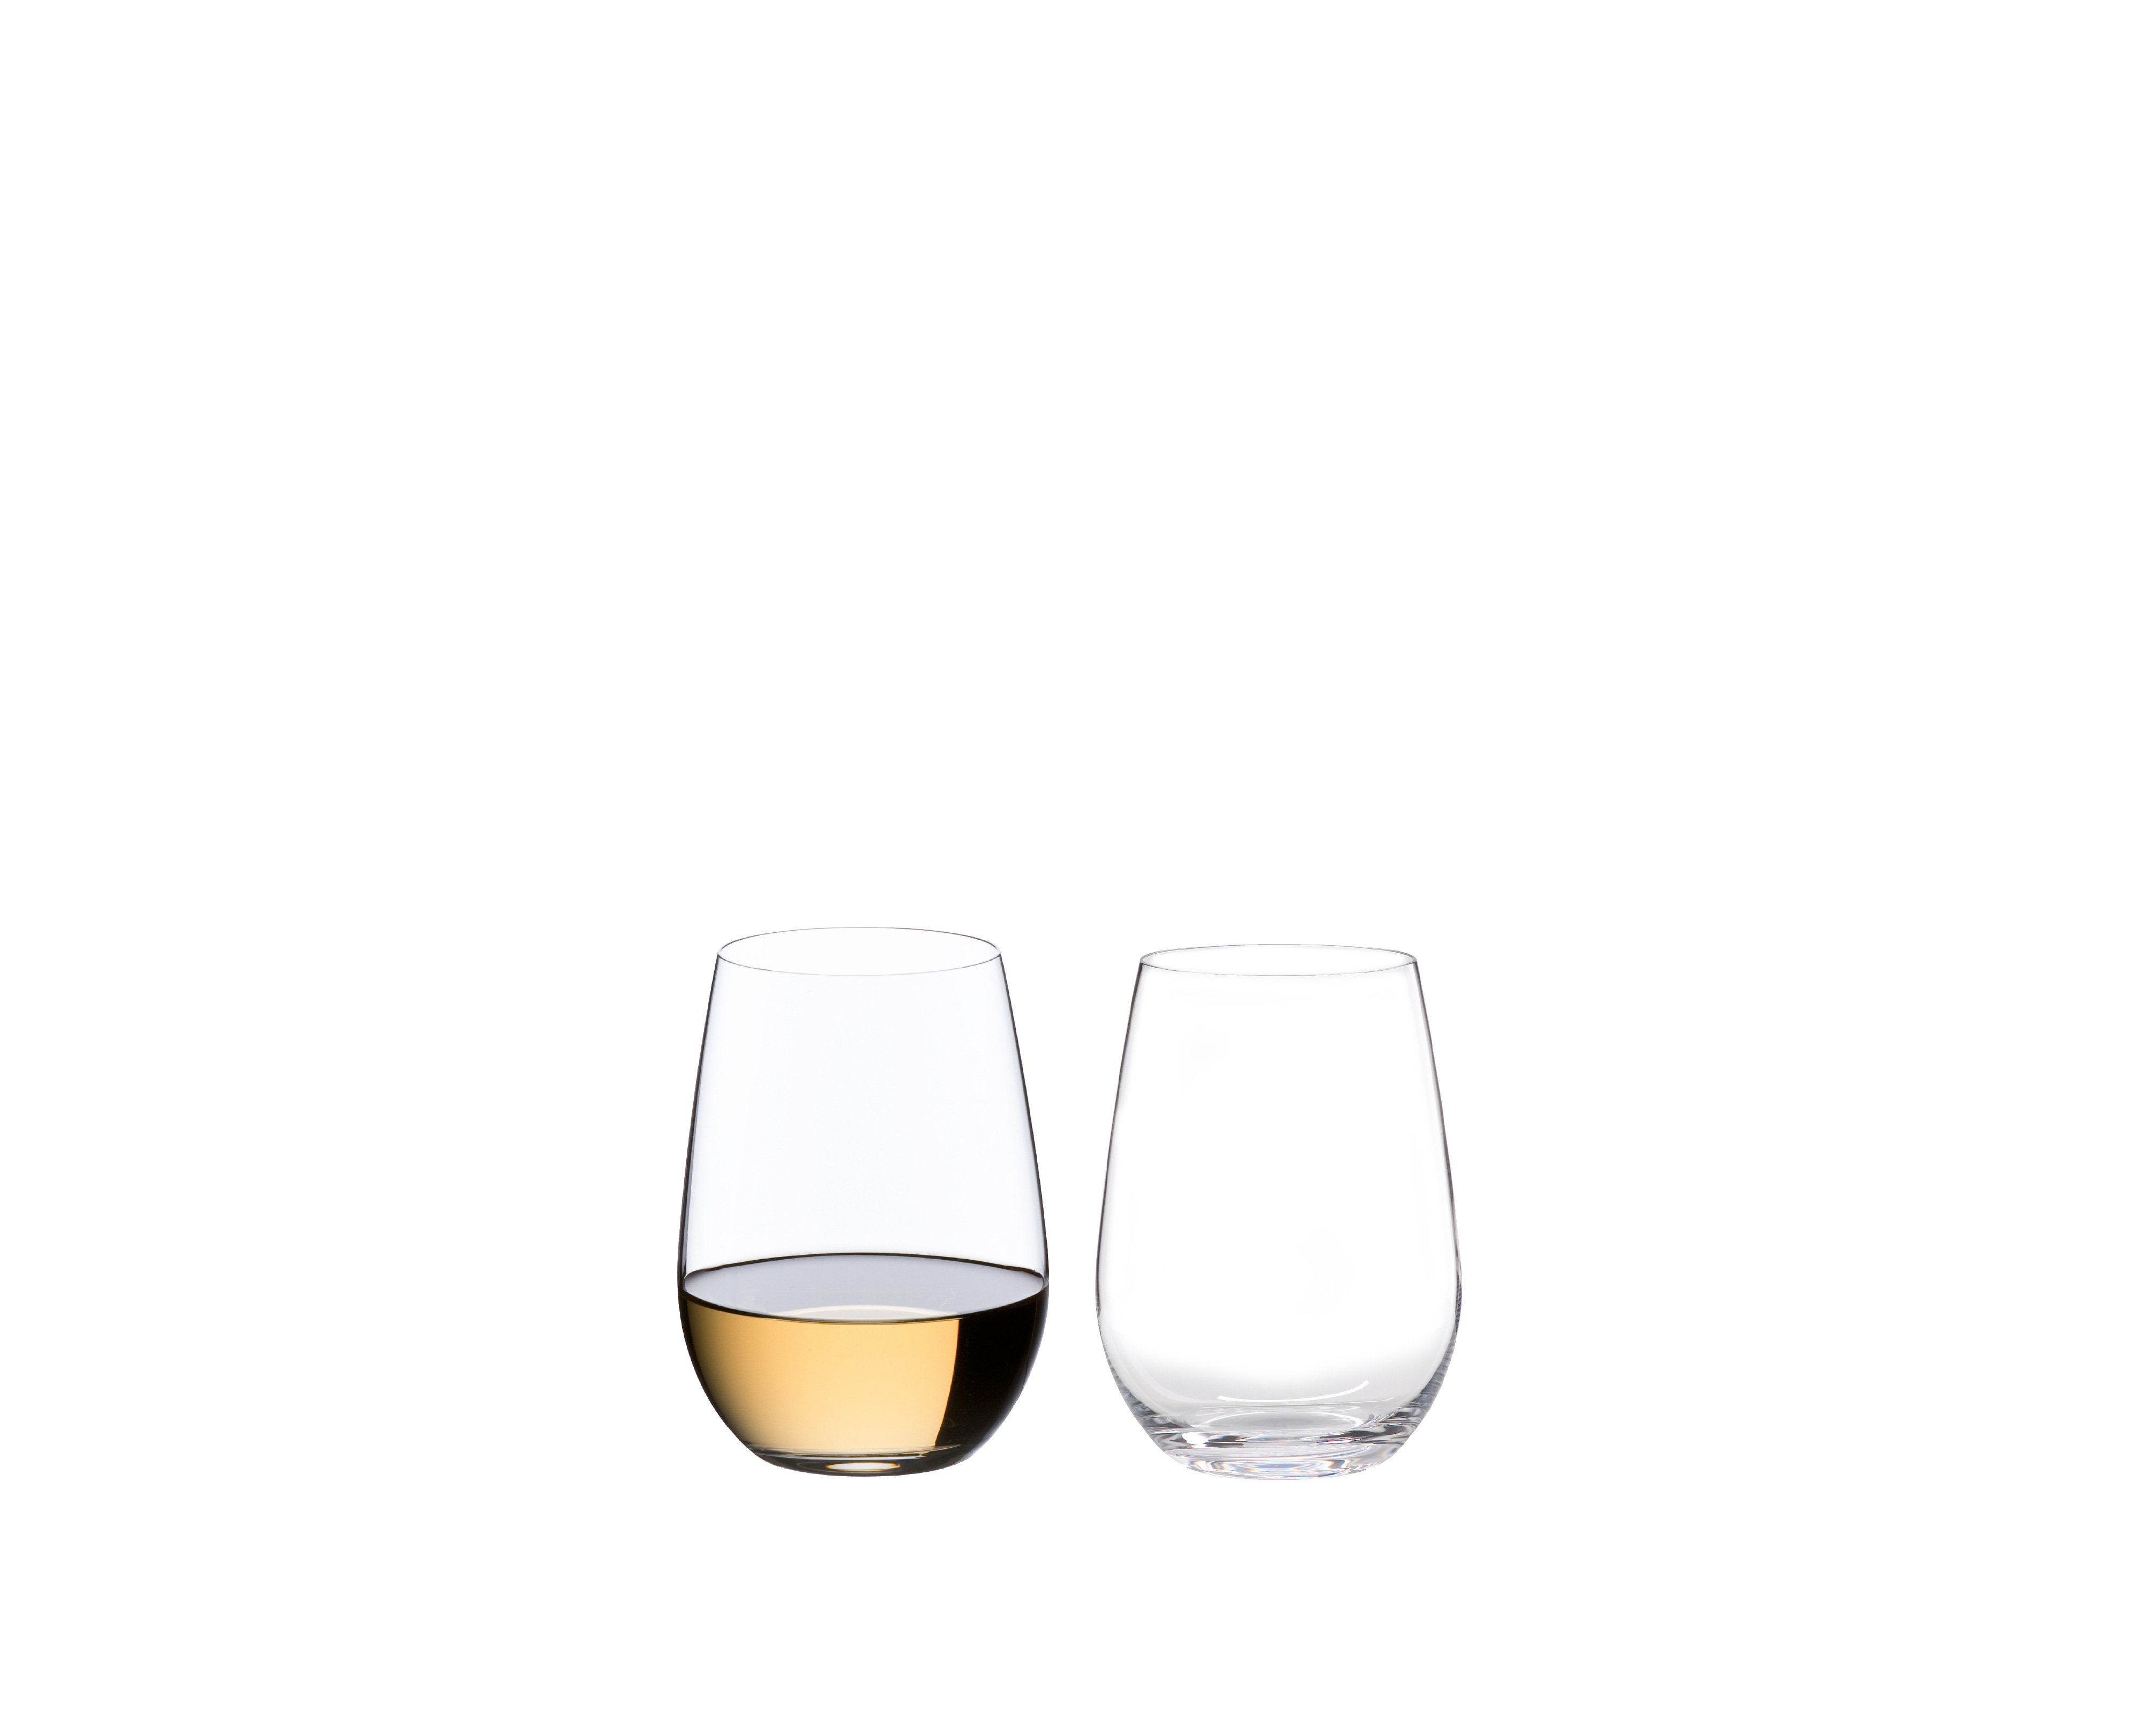 Riedel Degustazione O 19oz Stemless Wine Glass